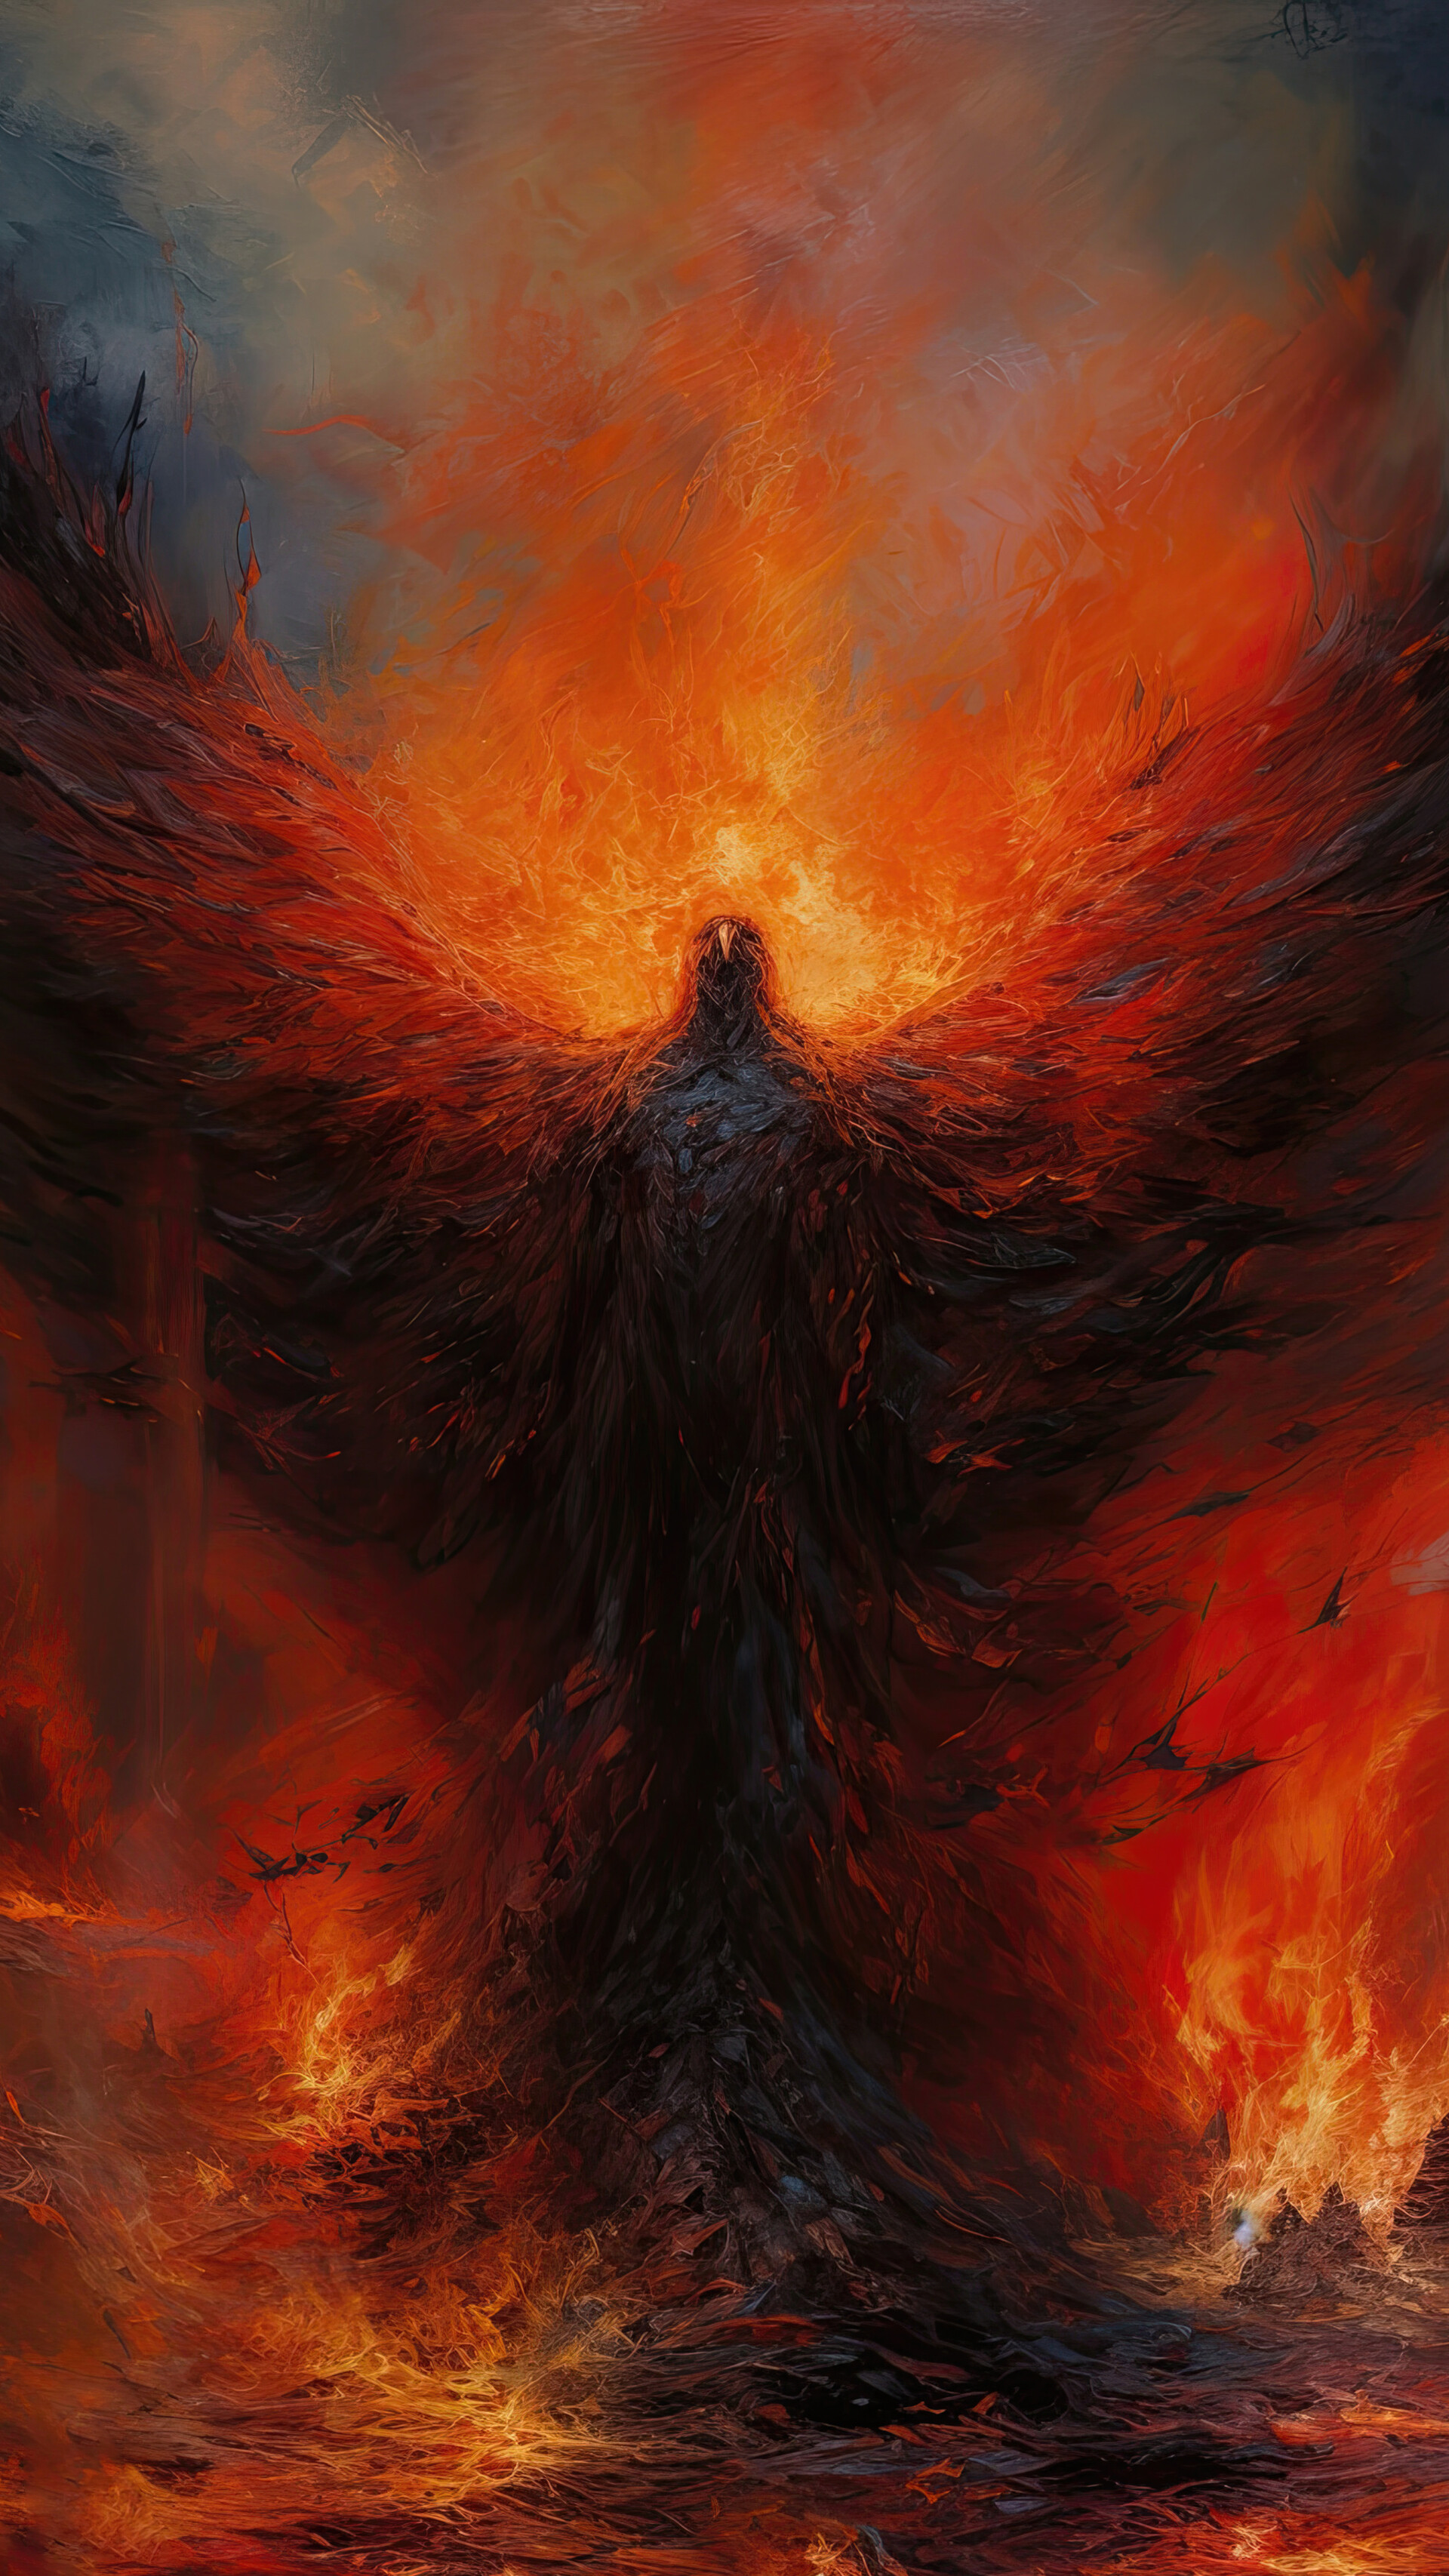 ArtStation - Fiery phoenix